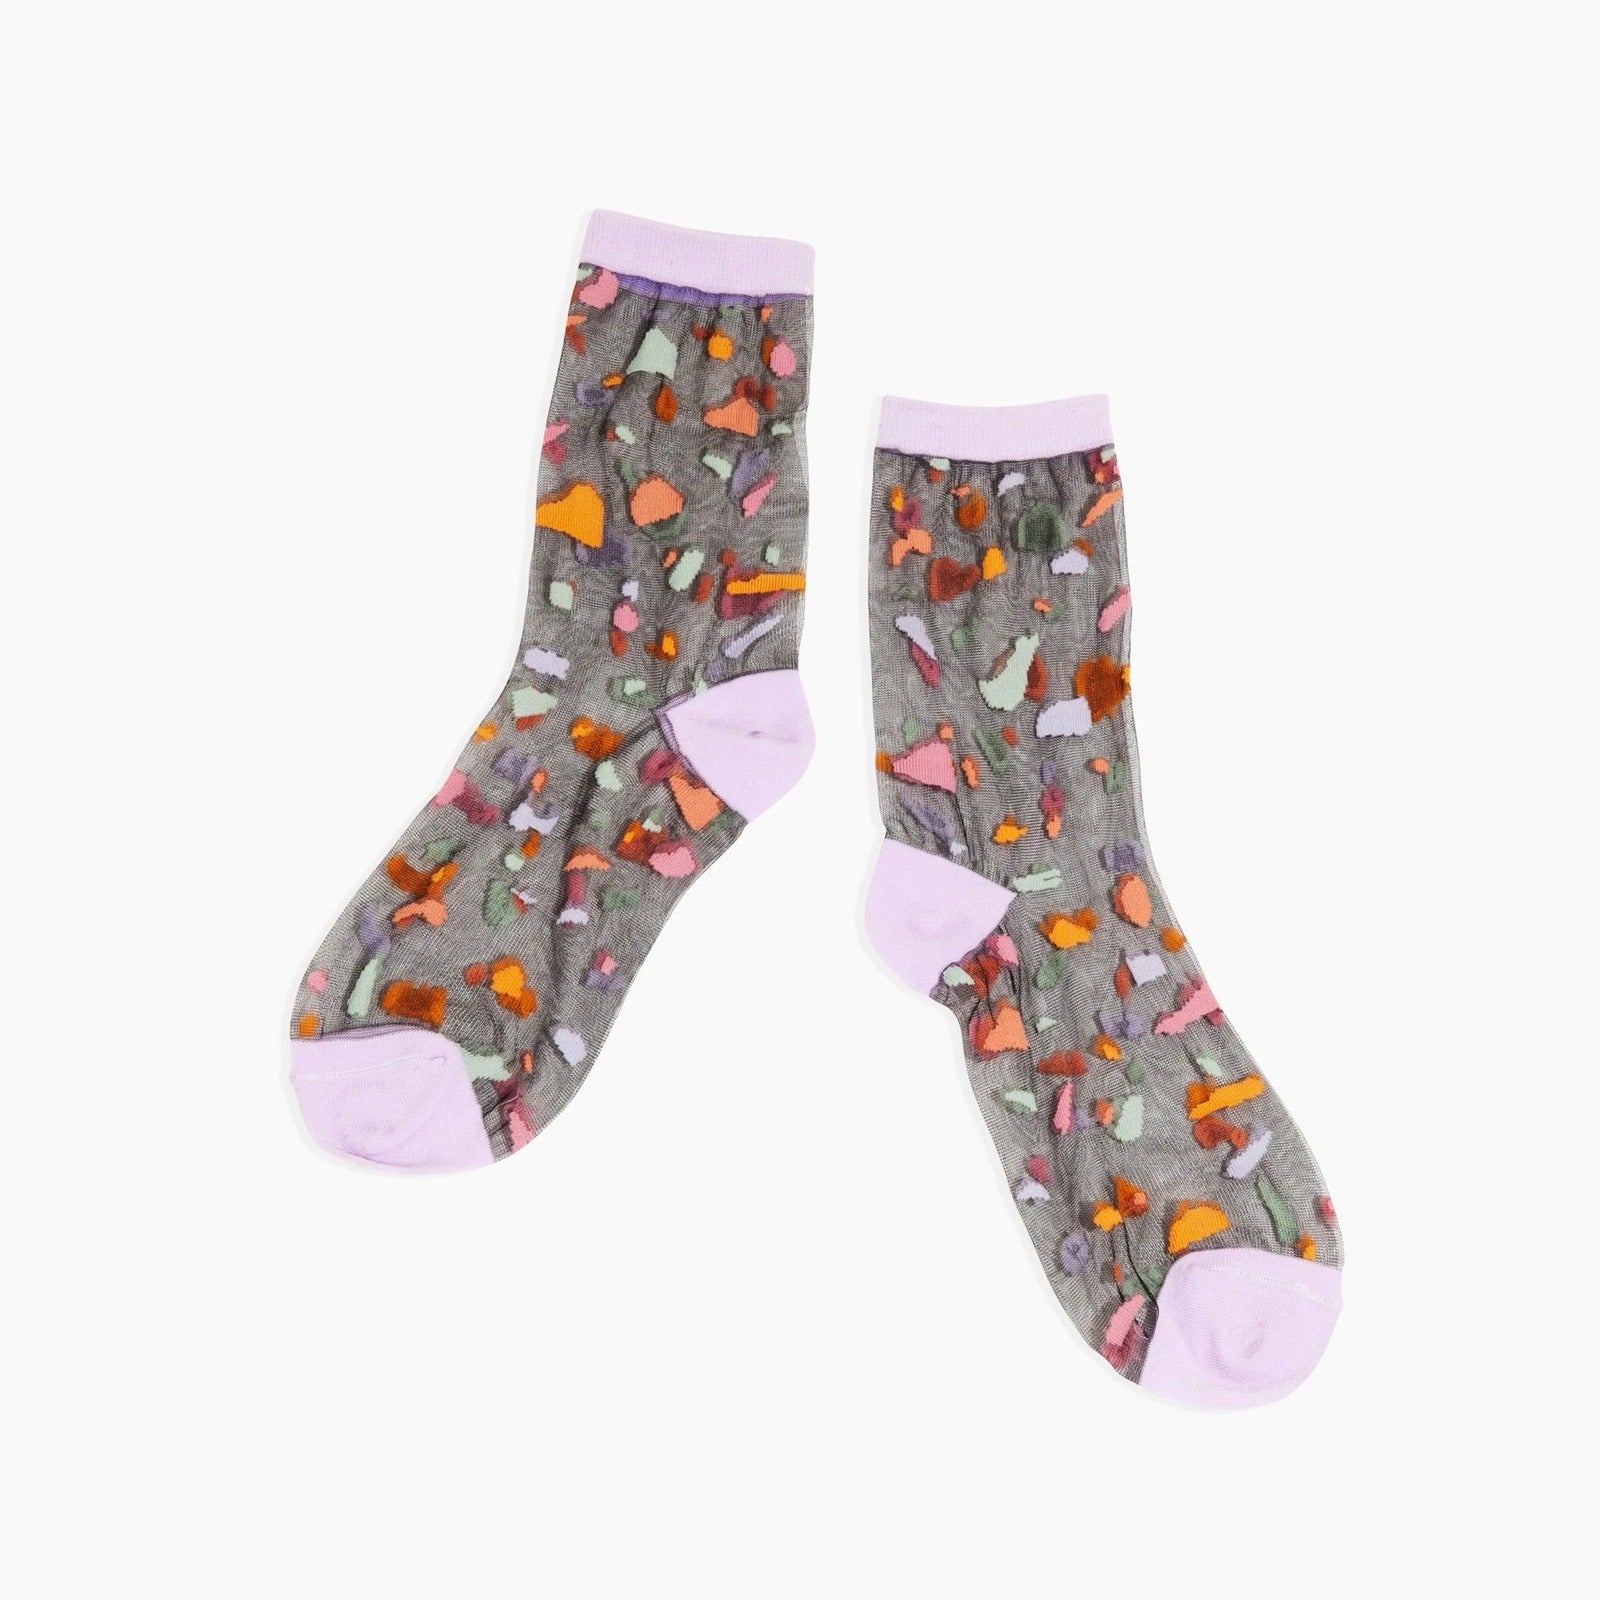 Sheer Socks | In Fragments